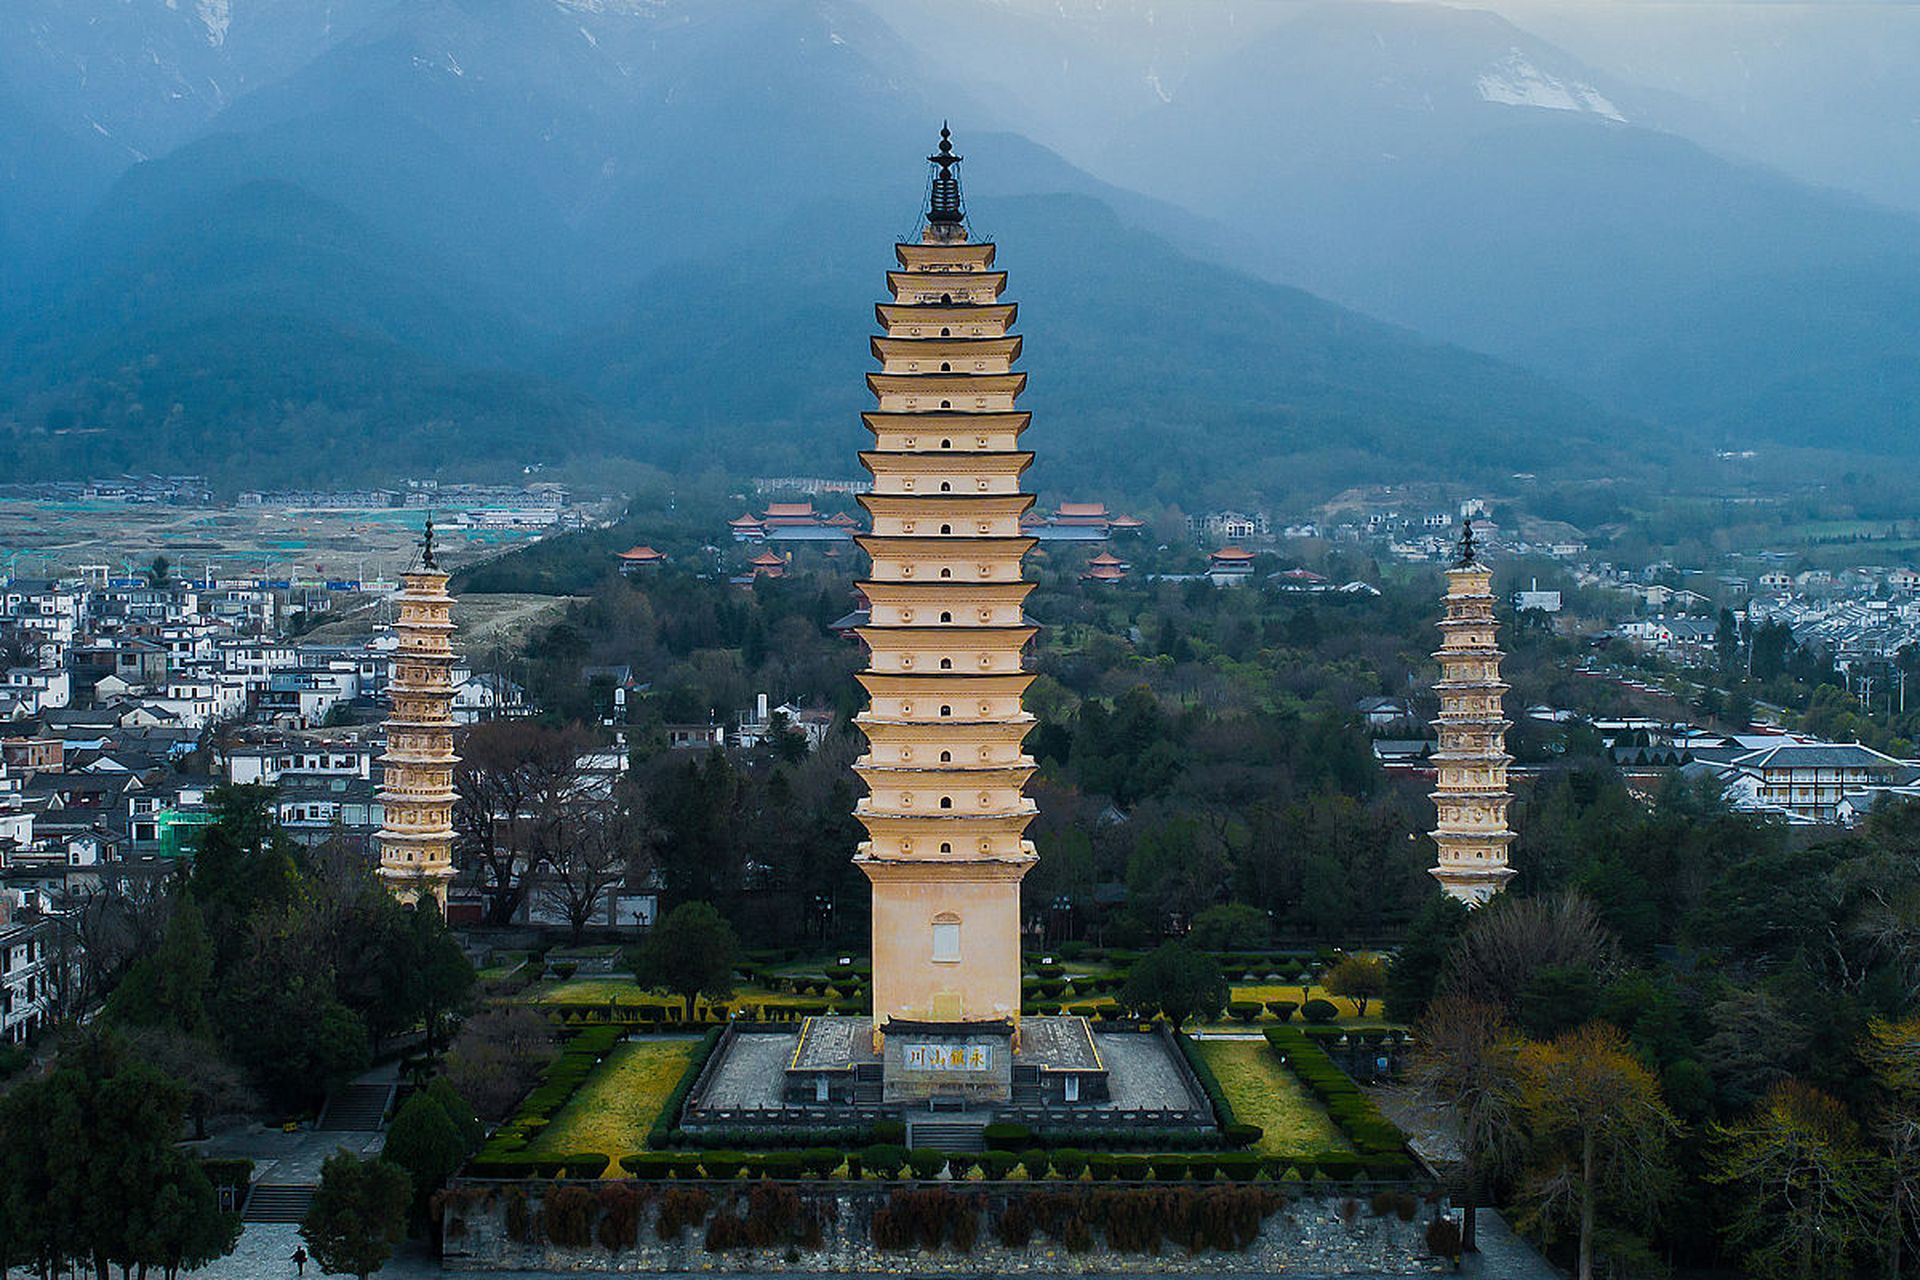 崇圣寺三塔由三座高大的佛塔组成,中间的主塔高69